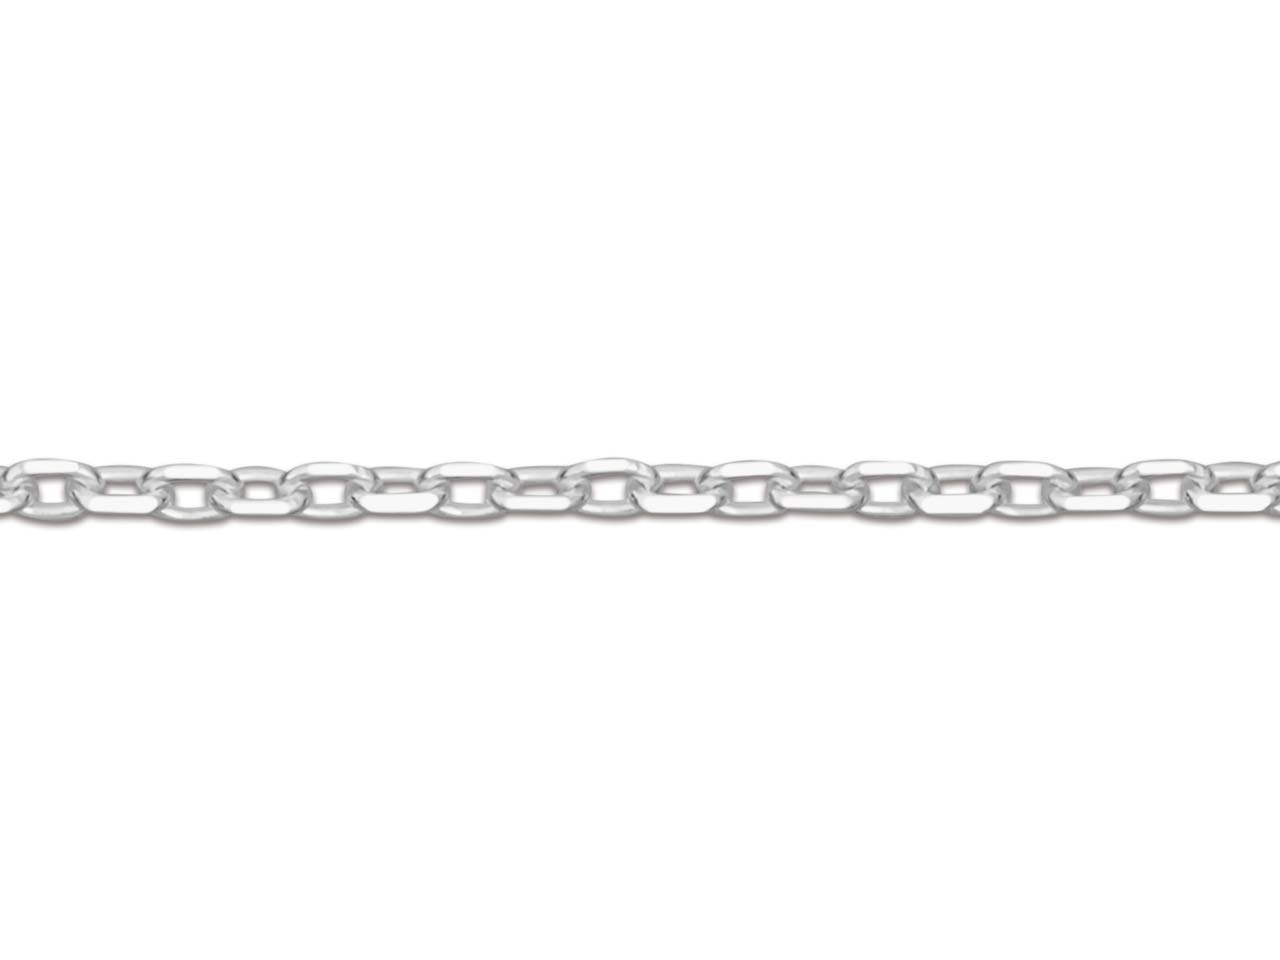 Slave silver 925 diamonded chain